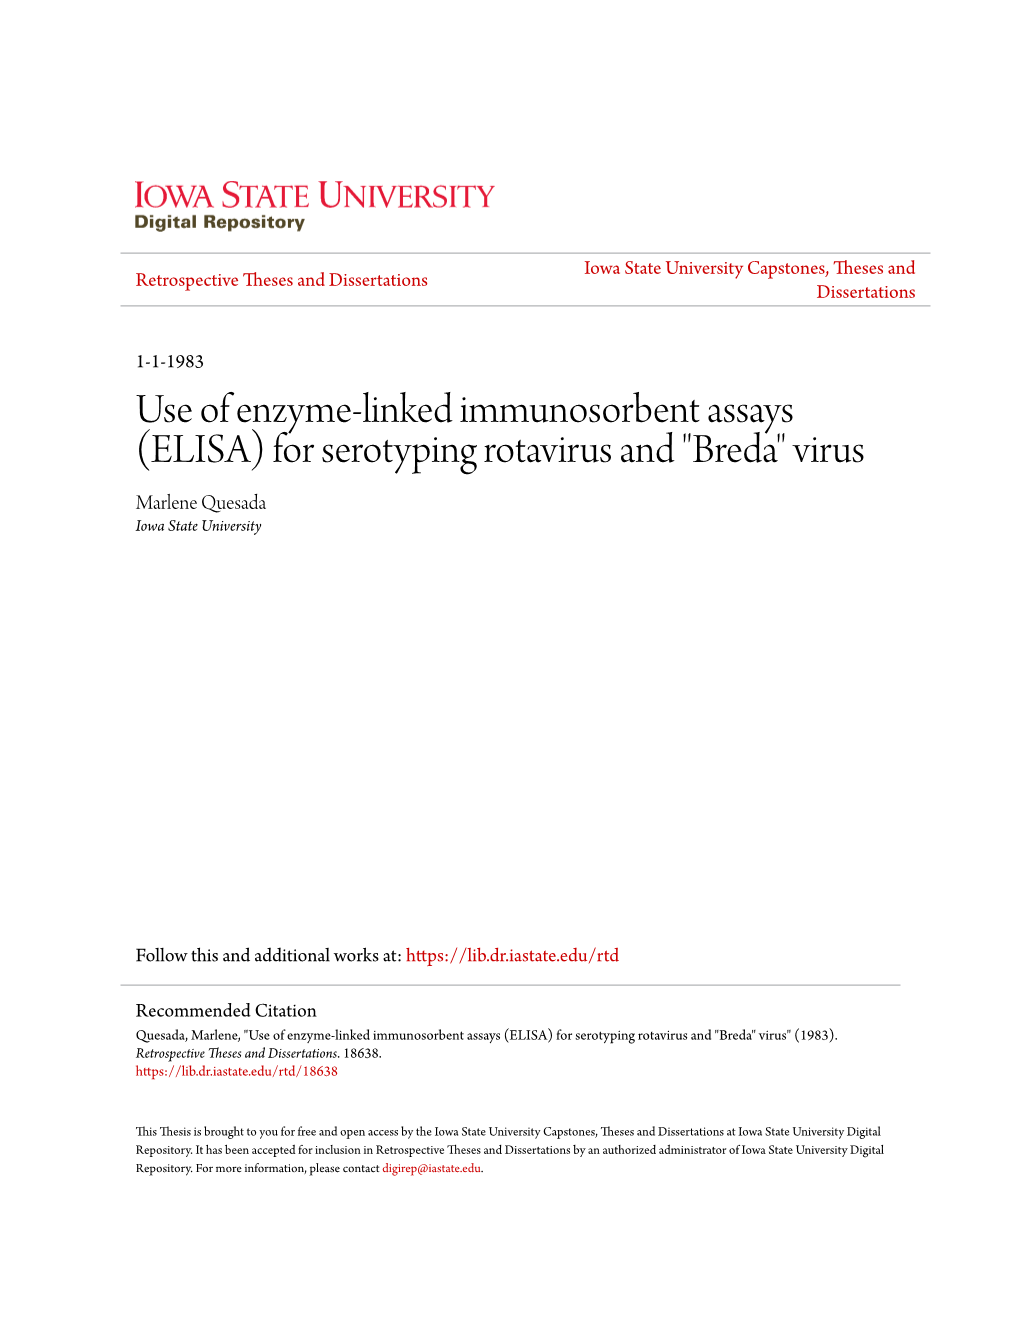 ELISA) for Serotyping Rotavirus and "Breda" Virus Marlene Quesada Iowa State University